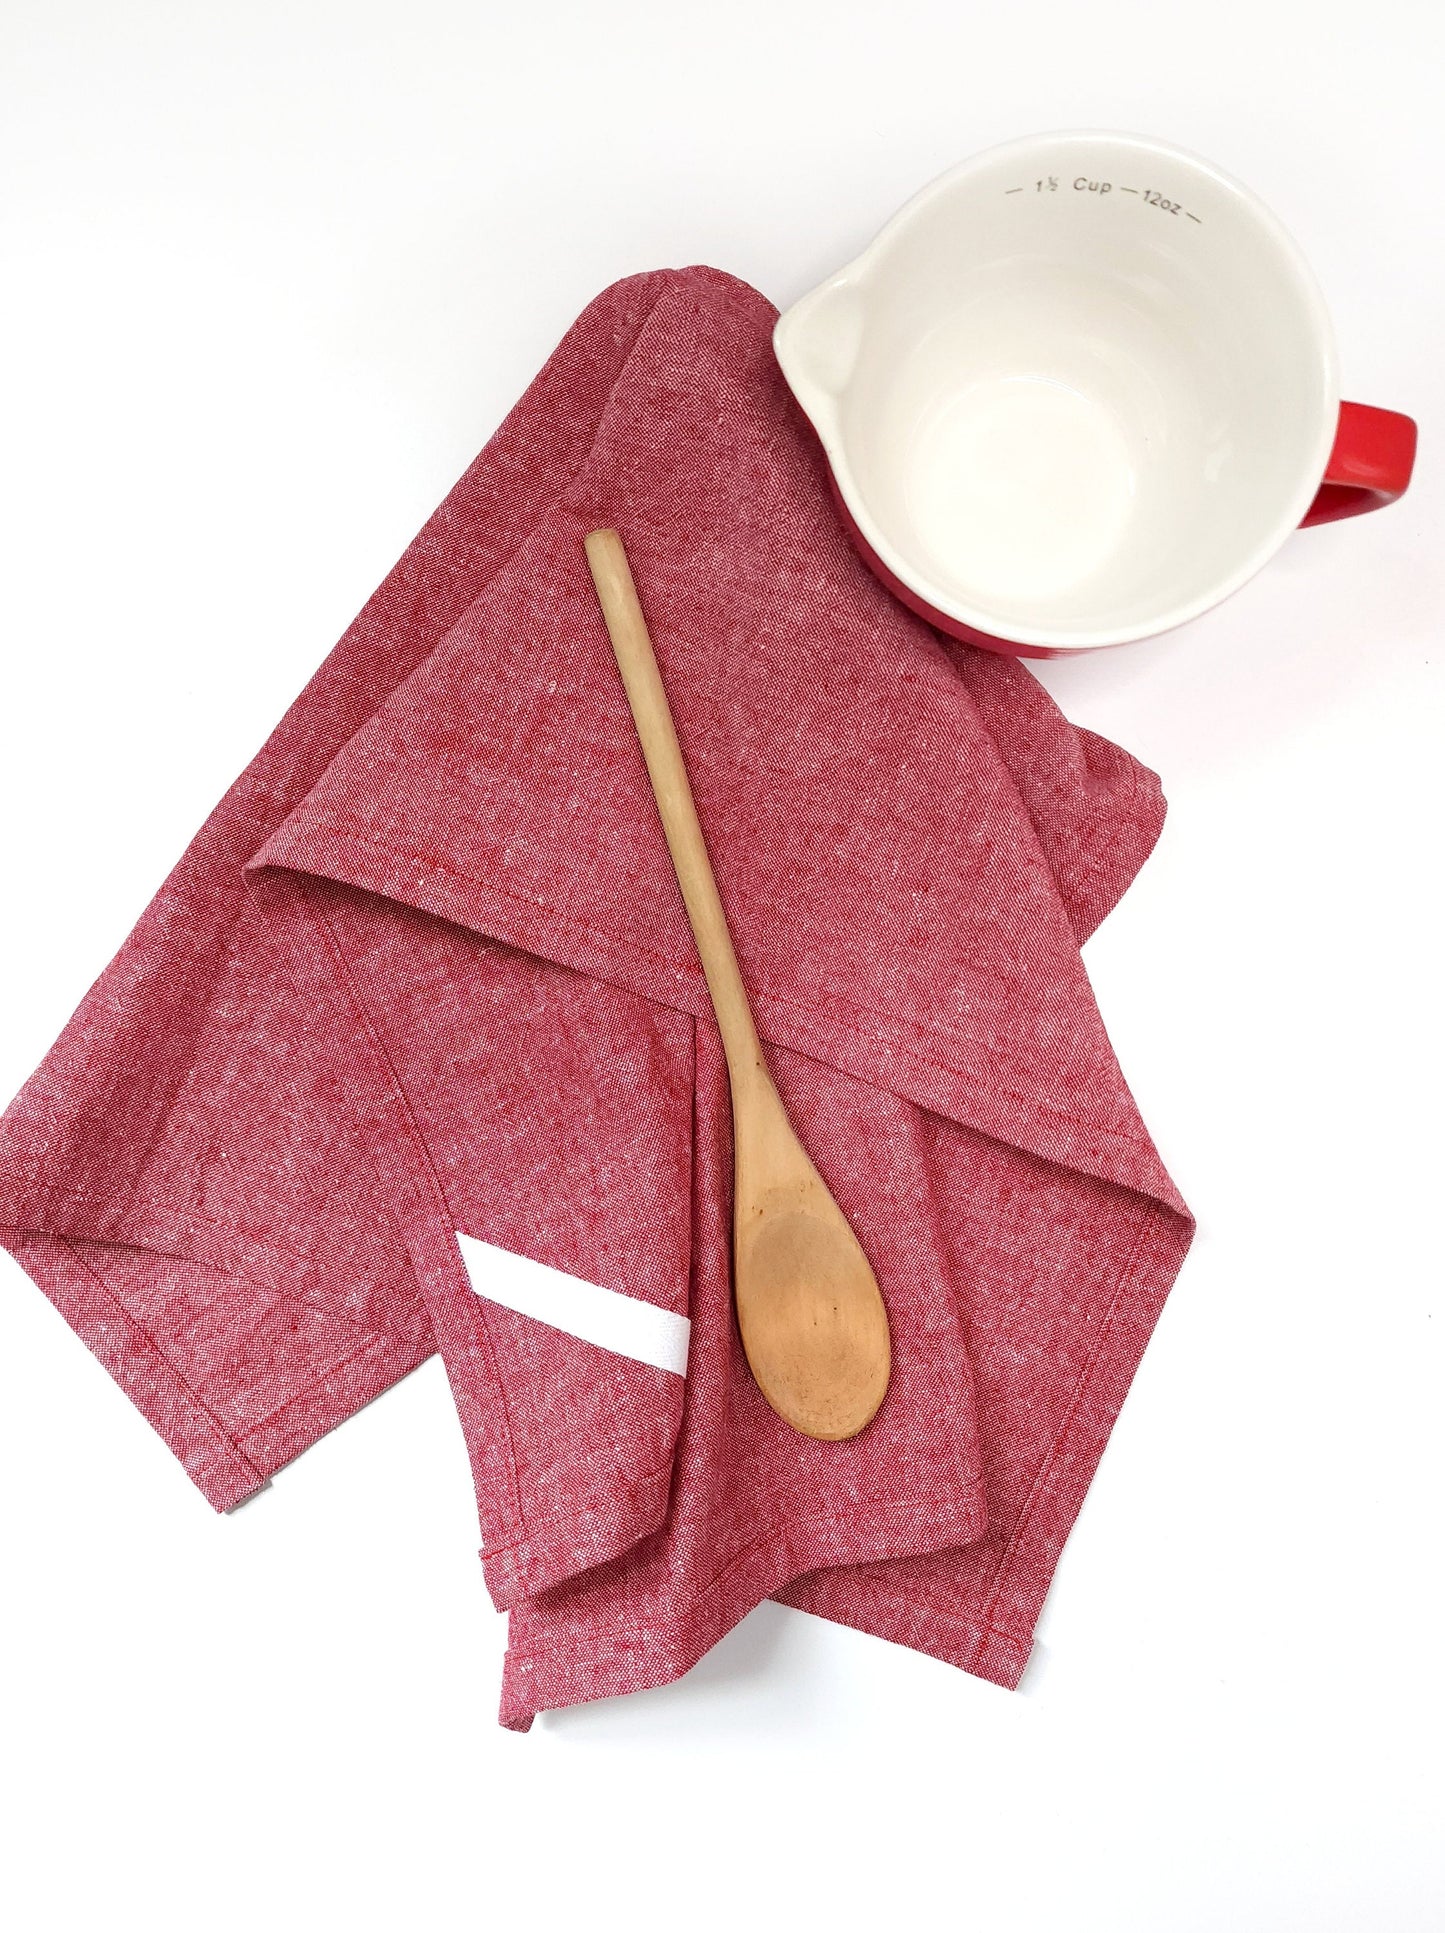 Red Linen Towel, Christmas Linen Towel